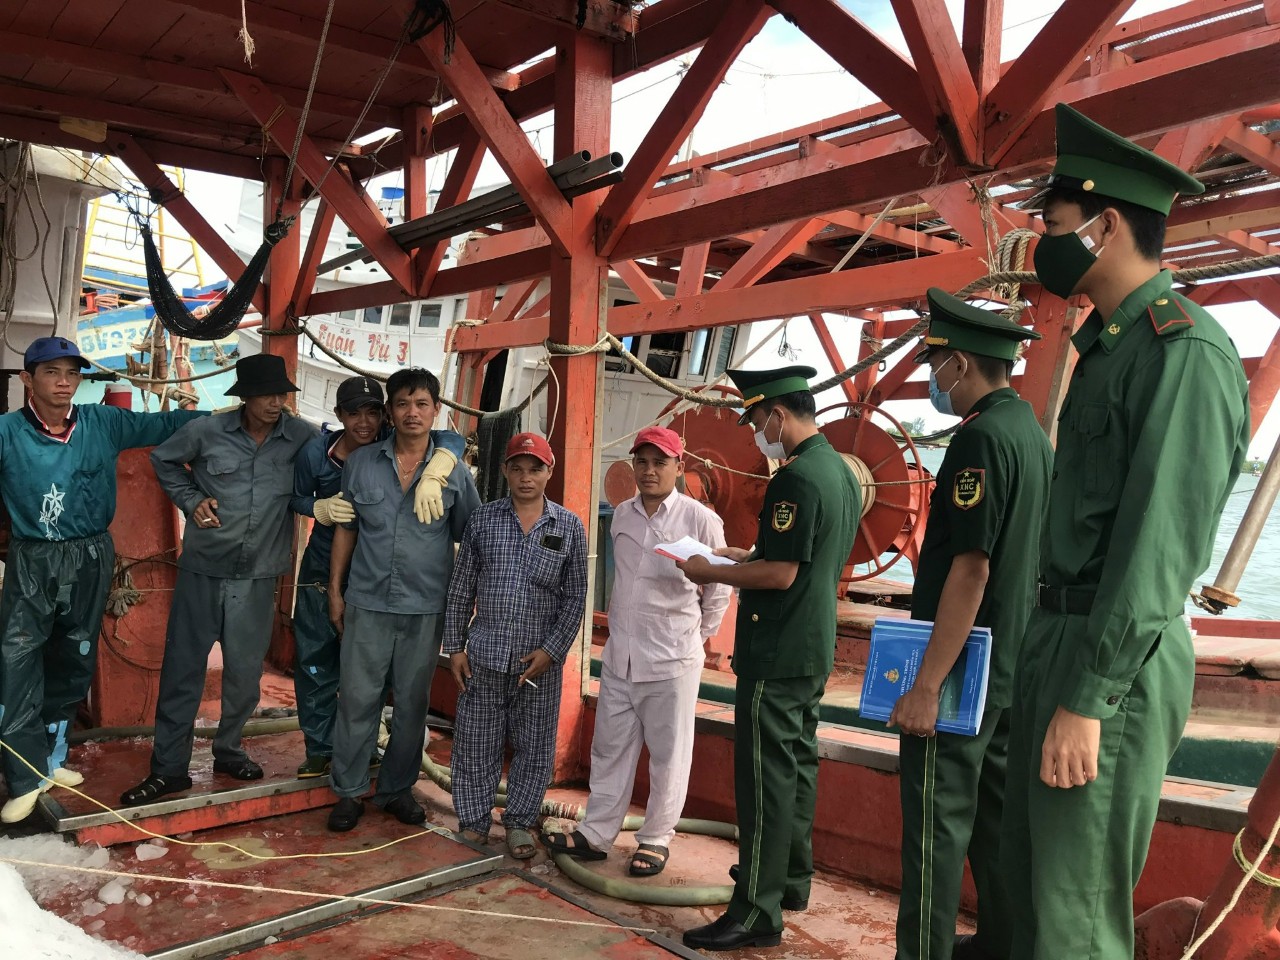 Cán bộ Trạm Biên phòng Cửa khẩu Cảng Vũng Tàu kiểm tra giấy tờ và thuyền viên trên tàu cá theo quy định IUU  tại cảng Cát Lở (TP.Vũng Tàu)